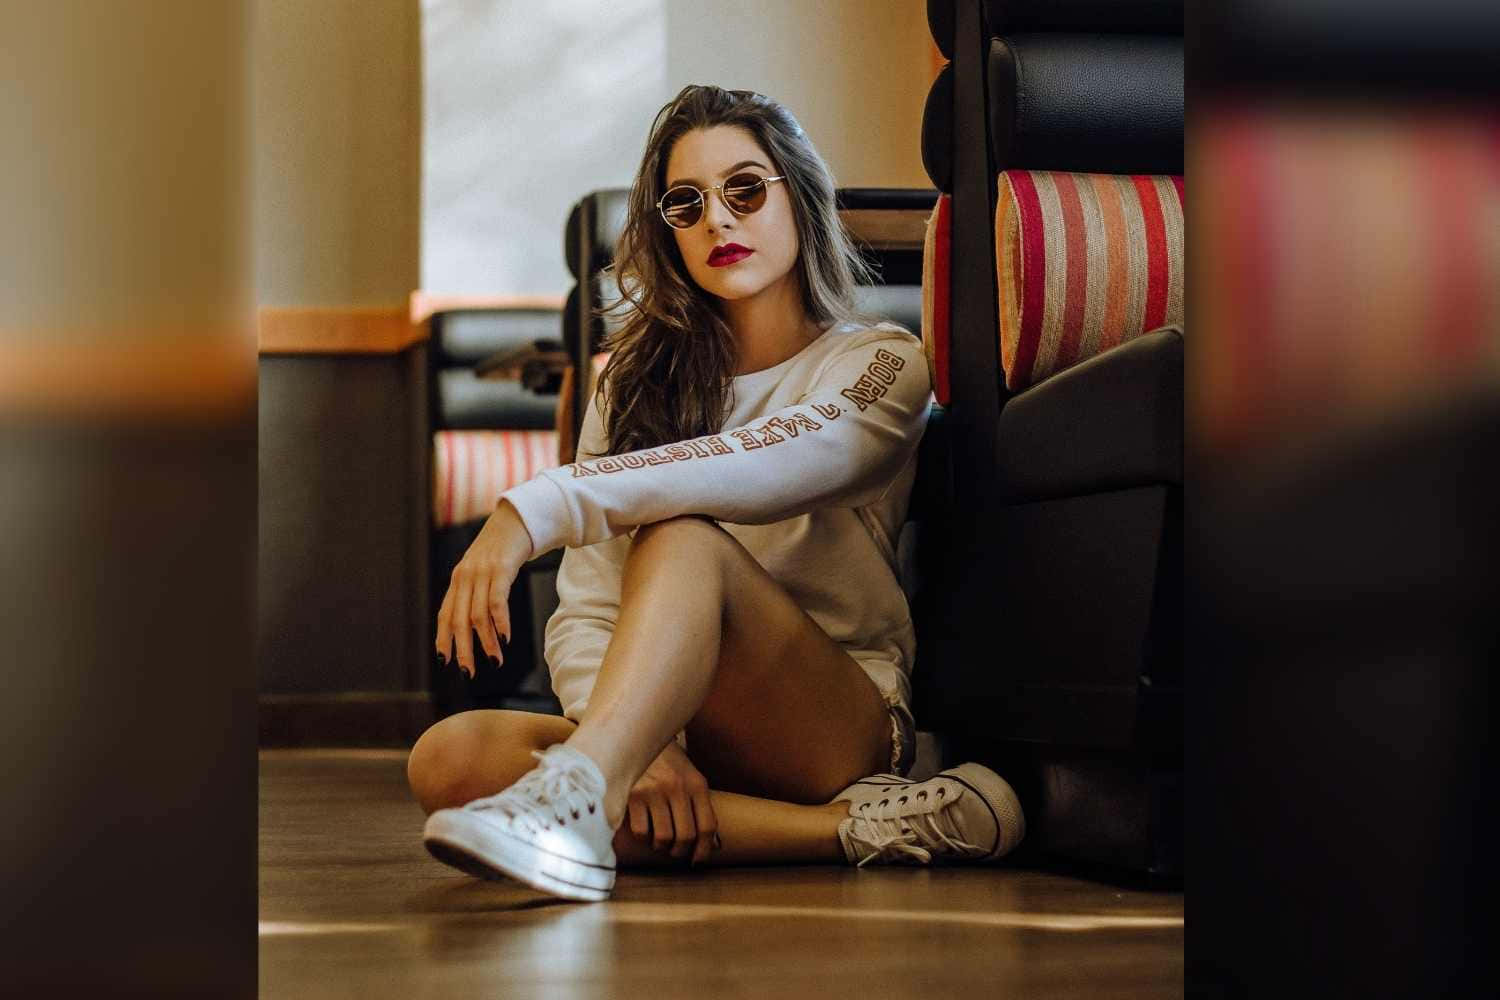 Imagende Una Chica Con Gafas De Sol En Pose Sentada